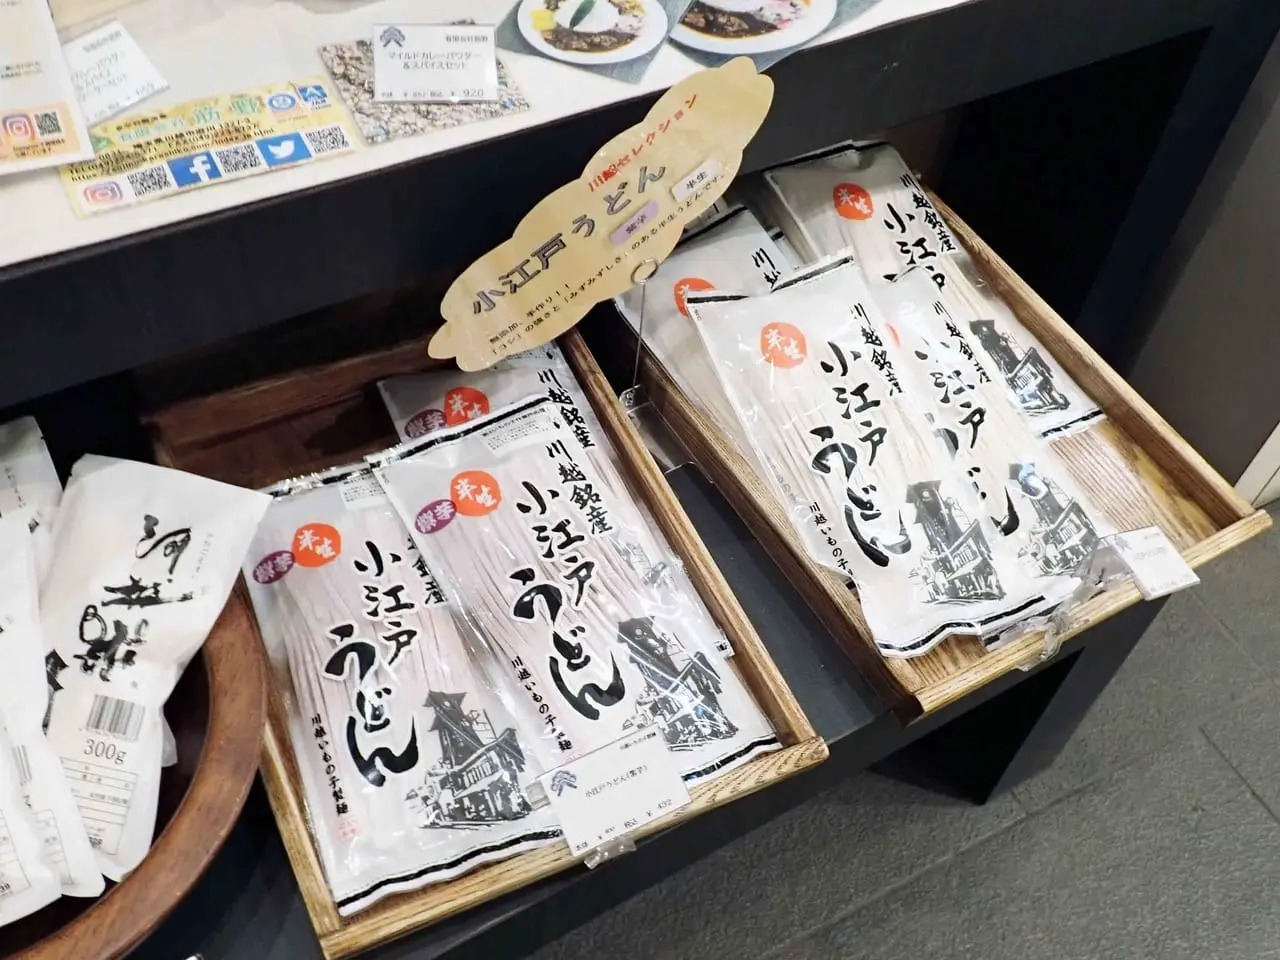 「小江戸うどん」は「川越市産業観光館 小江戸蔵里 KOEDO KURARI」などでも購入可能です